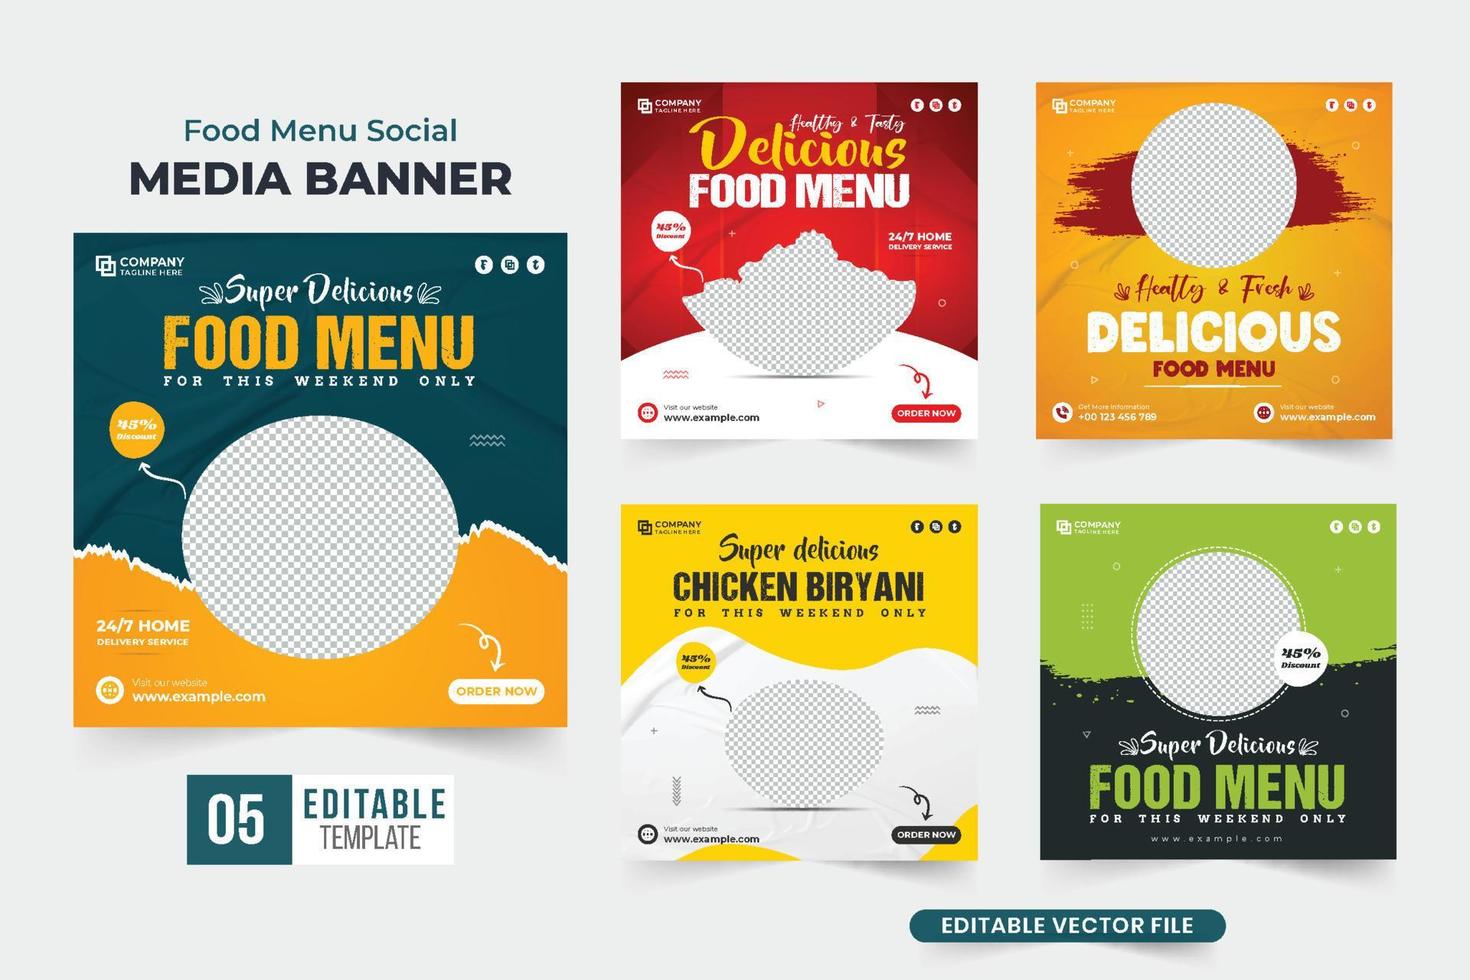 paquete de afiches publicitarios del menú de comida del restaurante con colores amarillo y azul. conjunto de banners web promocionales de negocios culinarios para marketing en redes sociales. colección de plantillas de descuento de menú de comida. vector